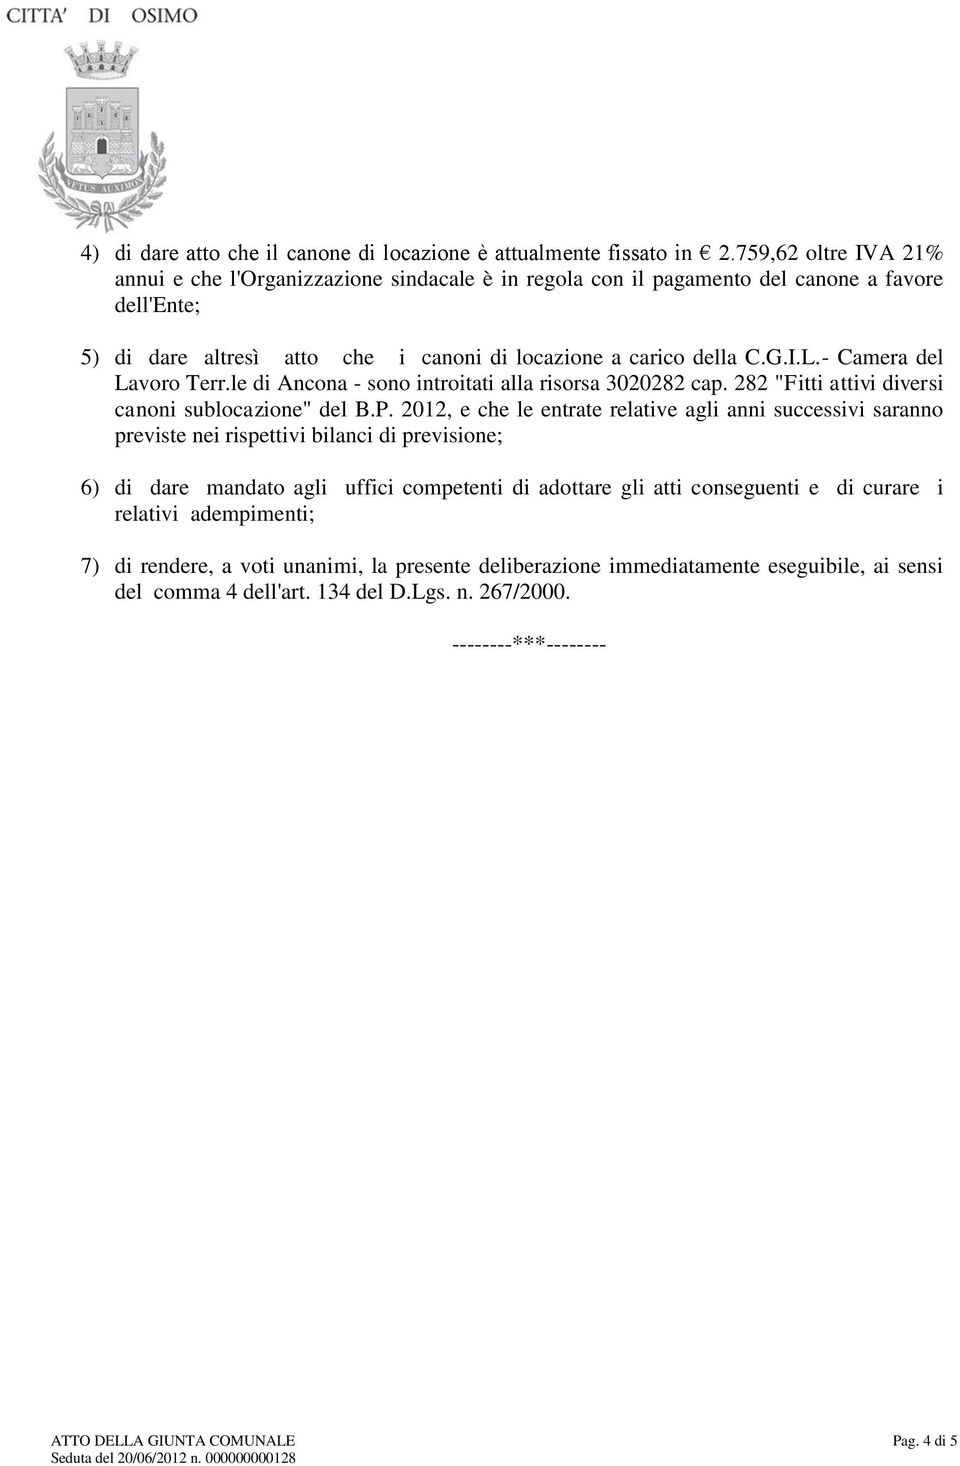 - Camera del Lavoro Terr.le di Ancona - sono introitati alla risorsa 3020282 cap. 282 "Fitti attivi diversi canoni sublocazione" del B.P.